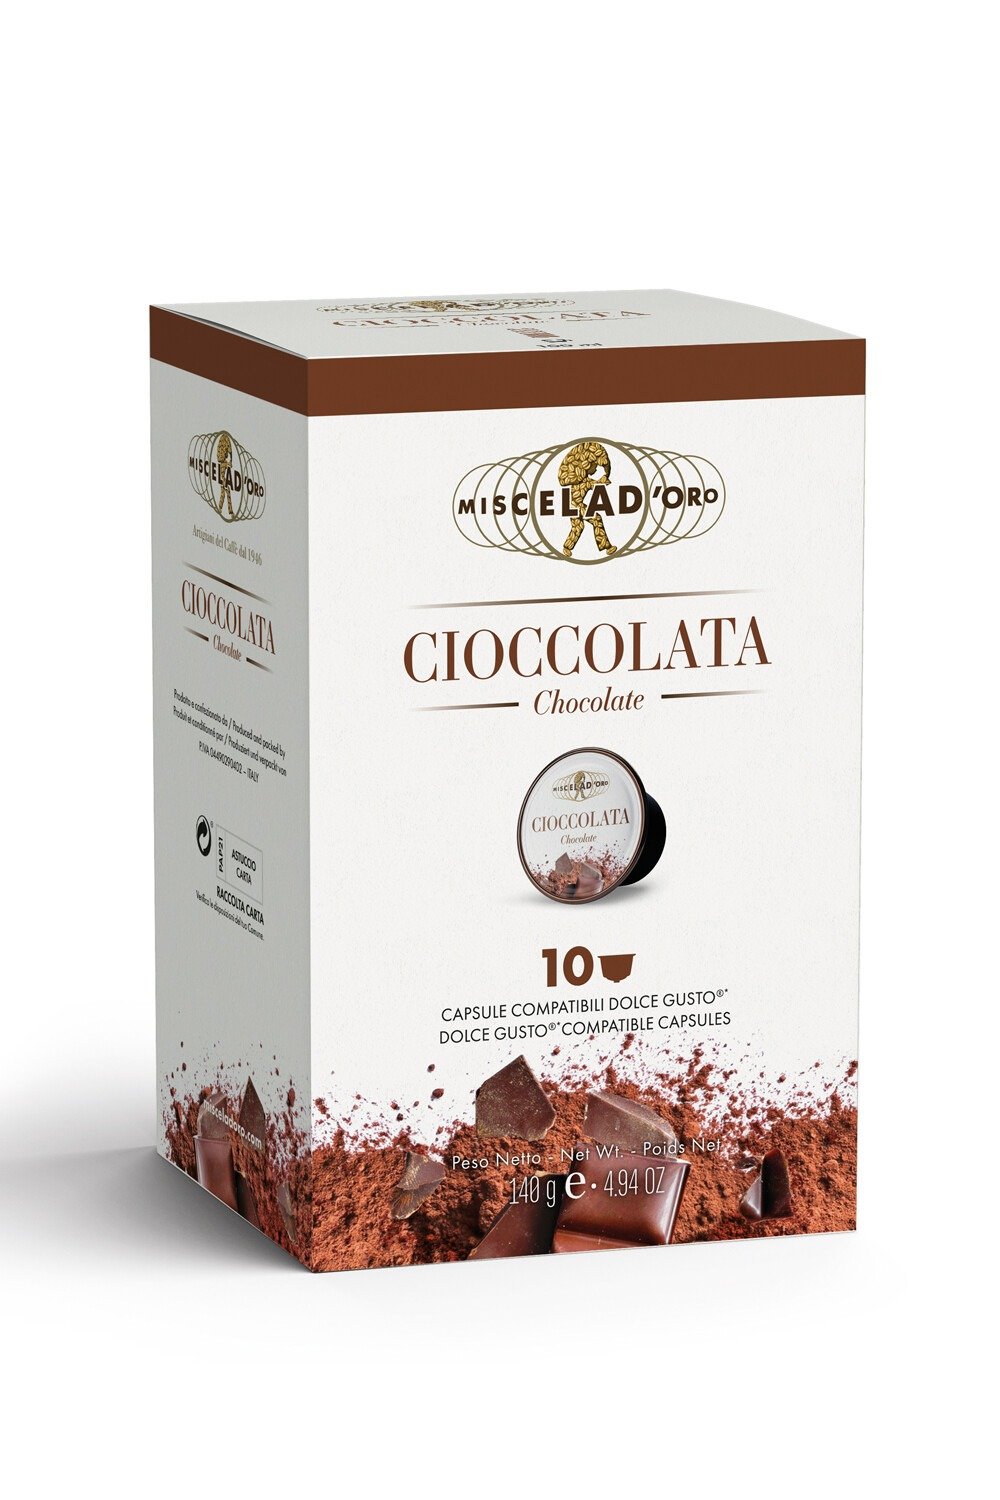 https://www.cremashop.eu/content/products/miscela-d-oro/dolce-gusto-cioccolata/11557-2a03ff75bae792fa72eb4deb0e94fcf1.jpg